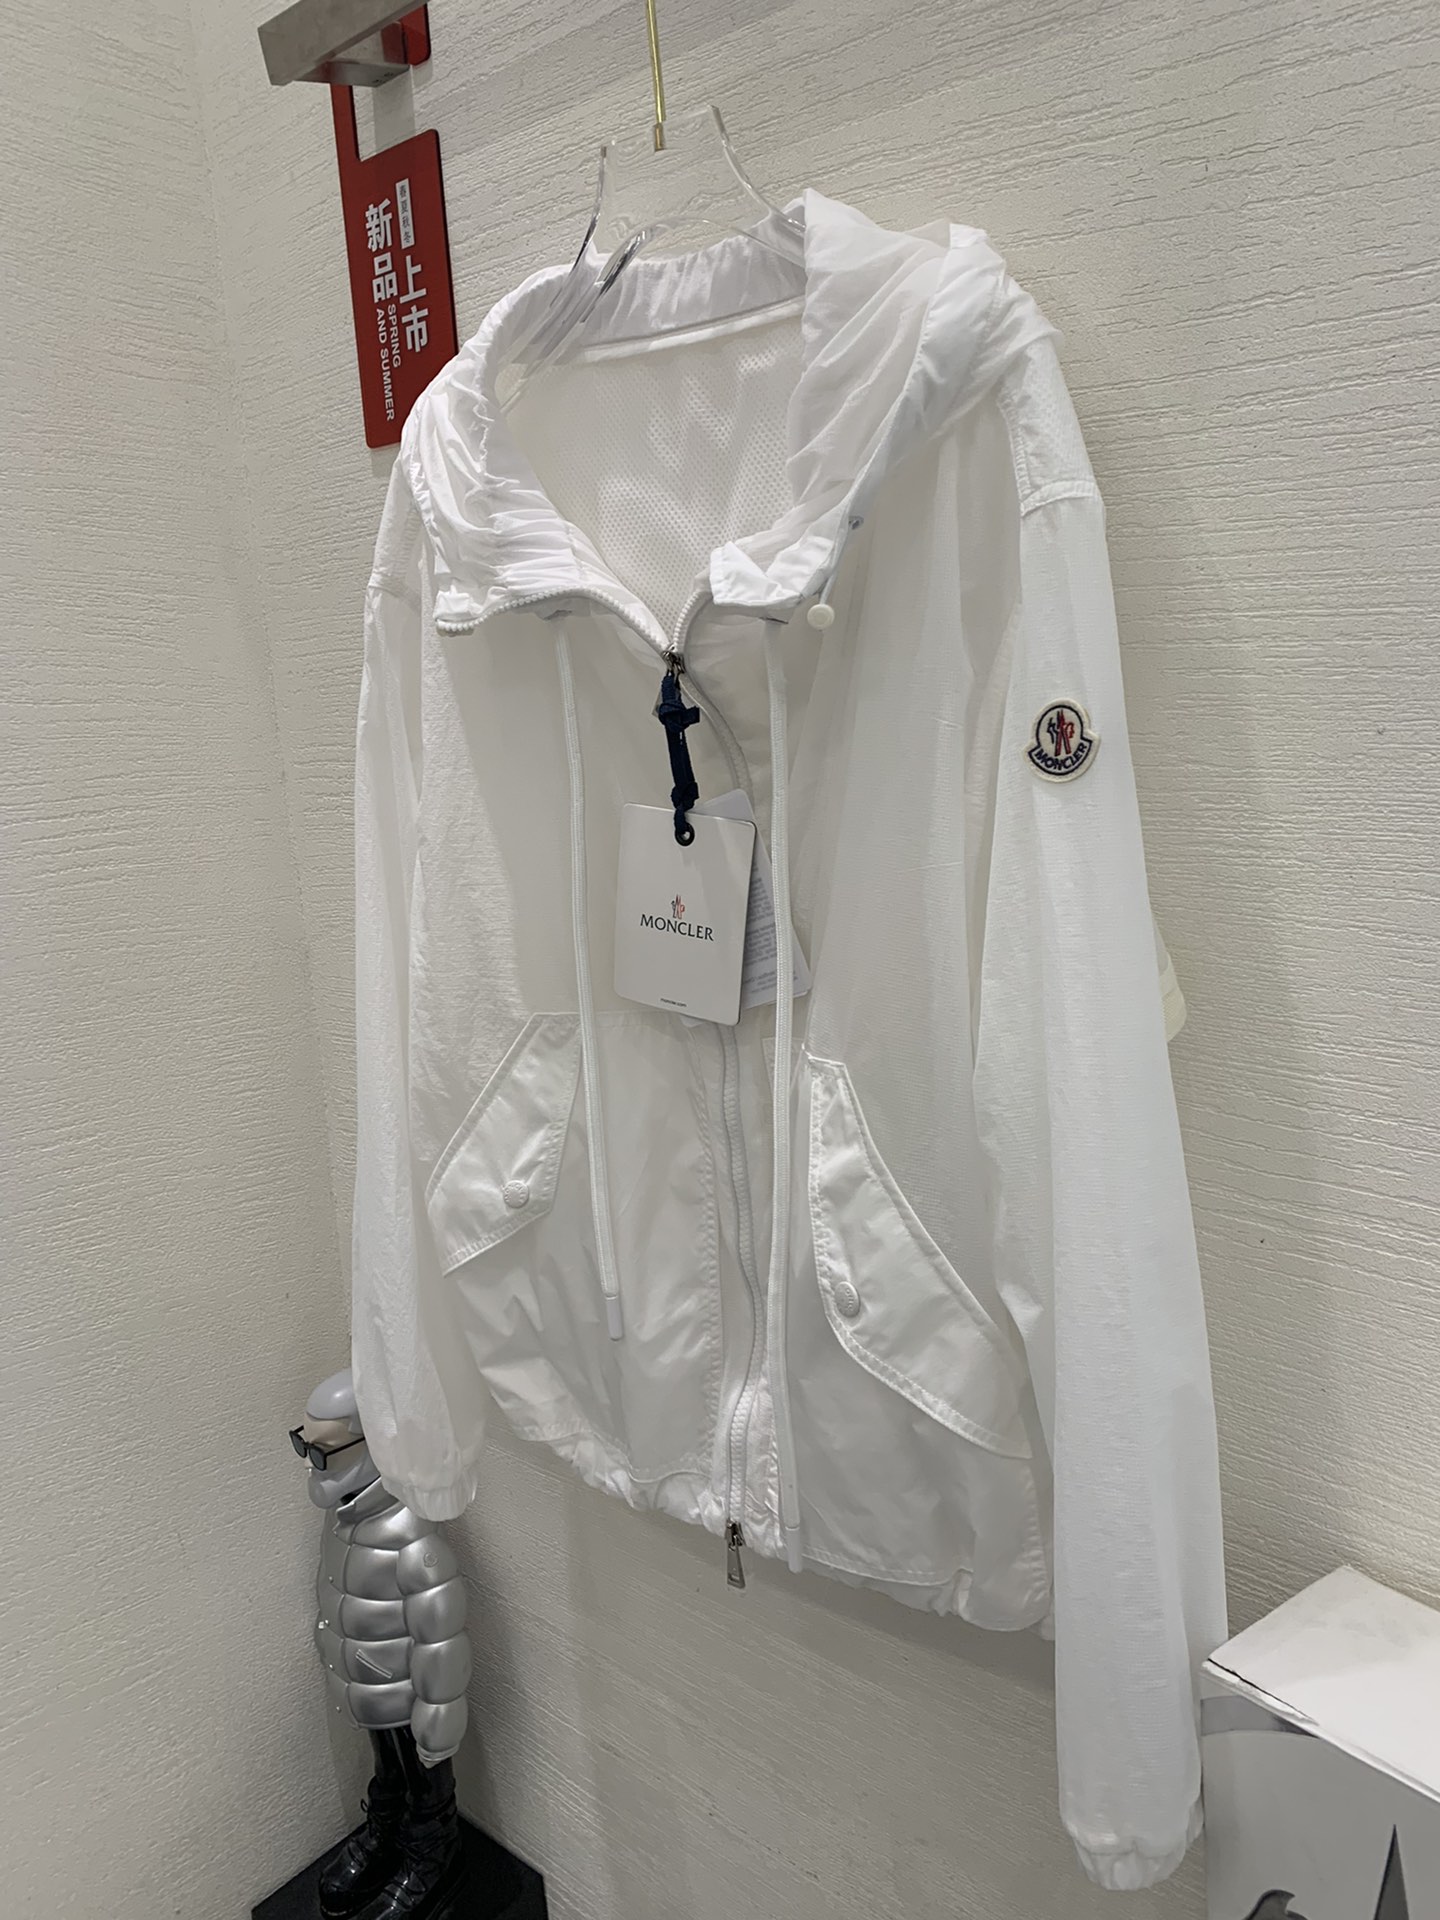 モンクレールトップス激安通販 ジャケット トップス アウター 軽量 防水 シンプル 防風 ファッション ホワイト_4